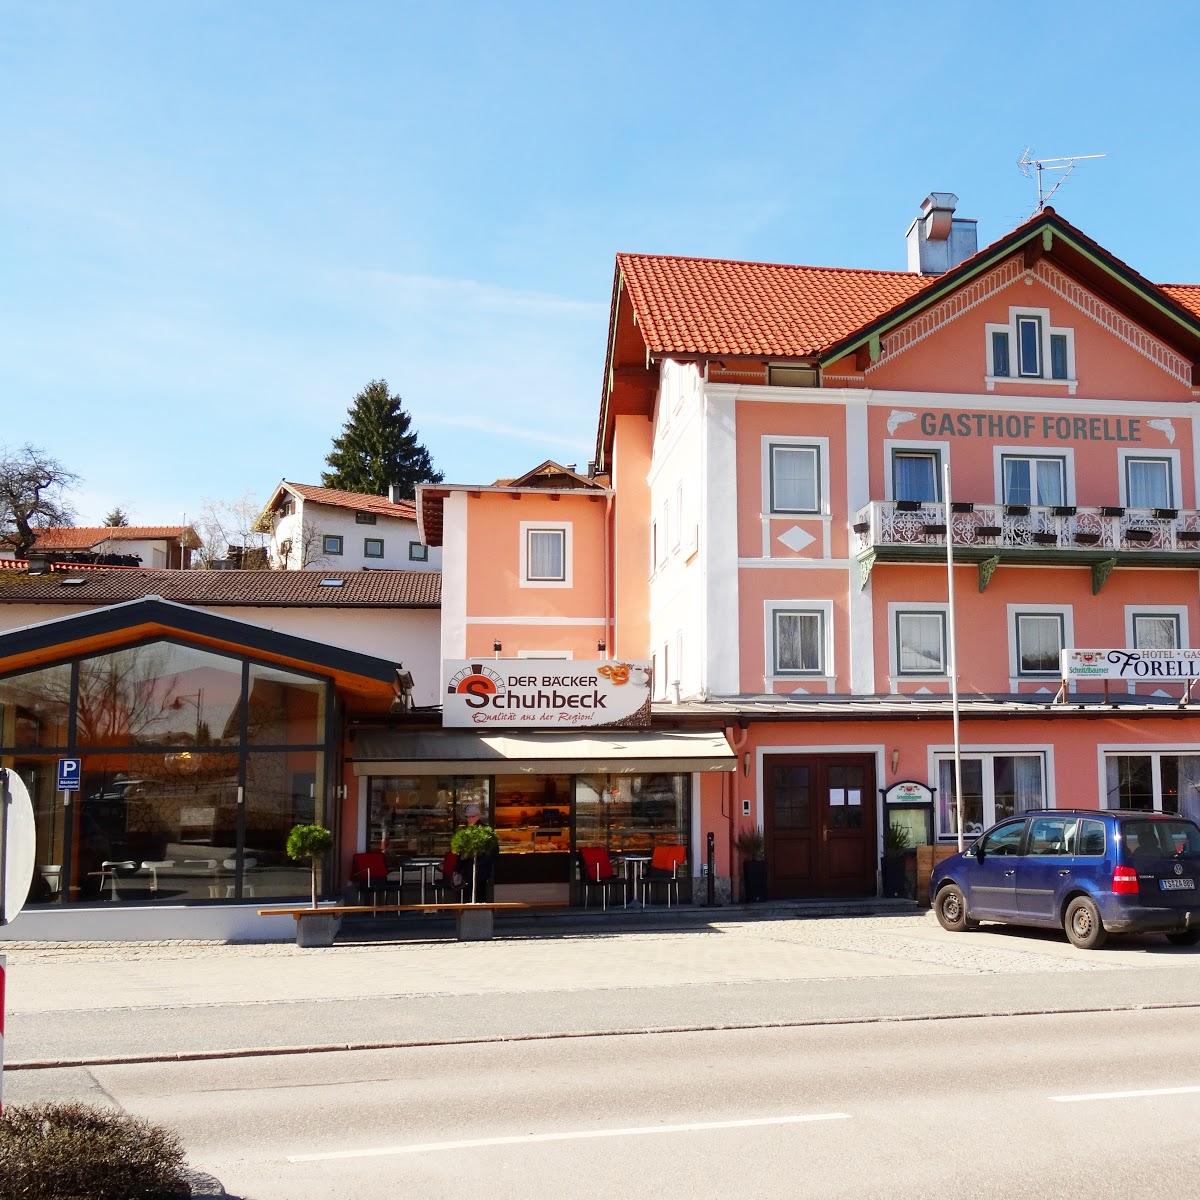 Restaurant "Hotel Forelle" in Siegsdorf